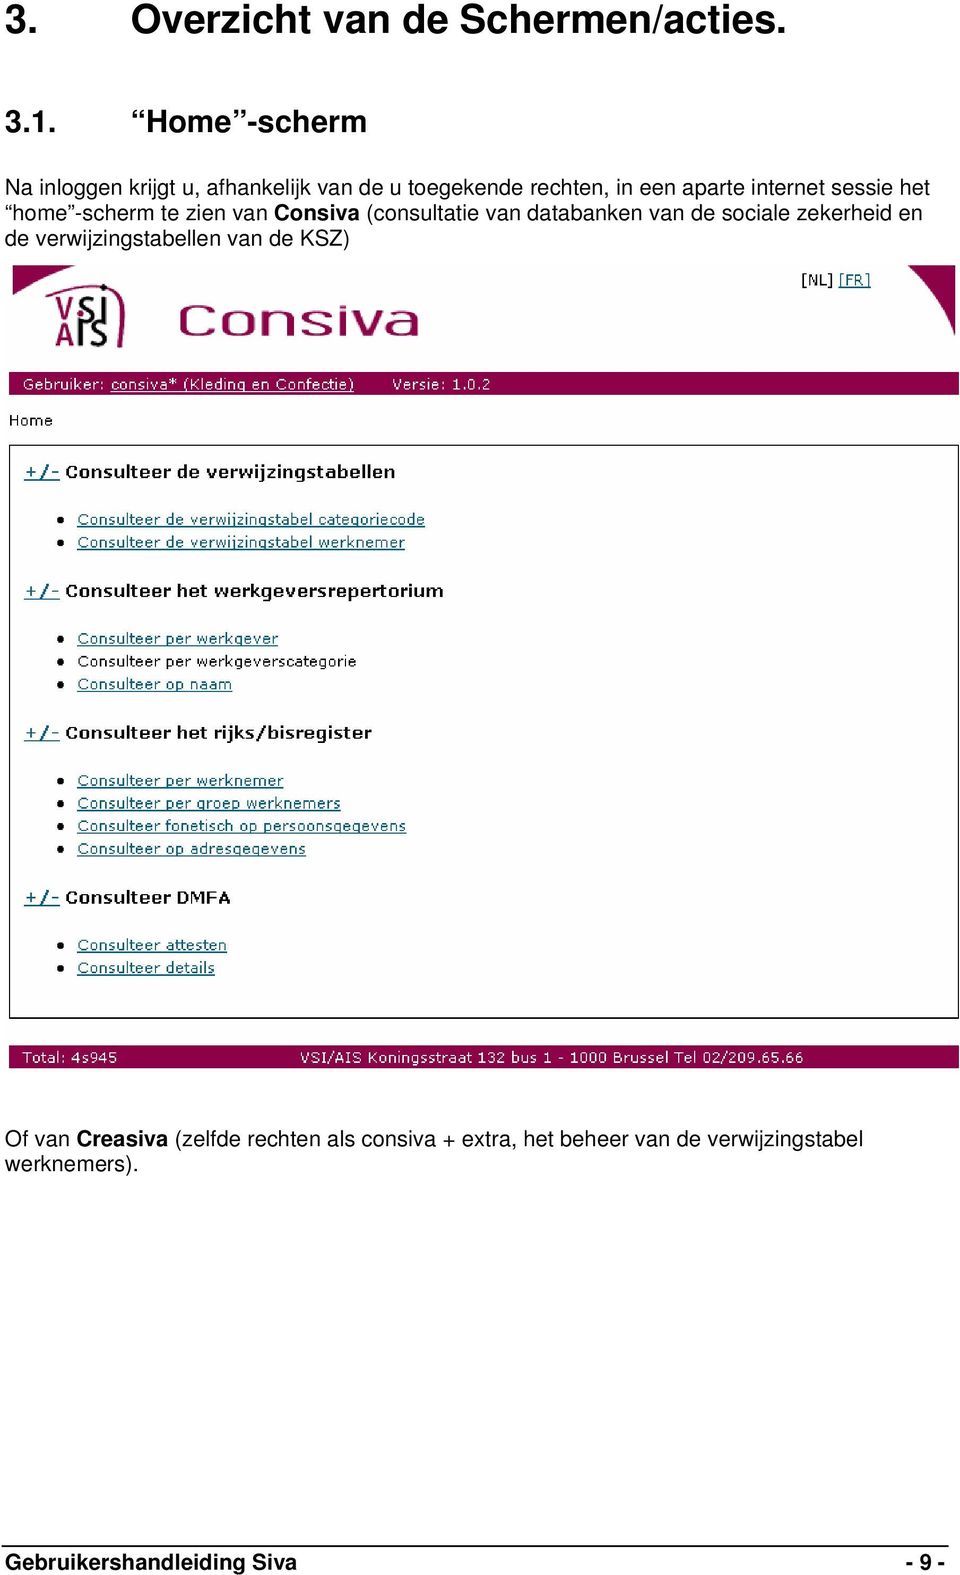 sessie het home -scherm te zien van Consiva (consultatie van databanken van de sociale zekerheid en de